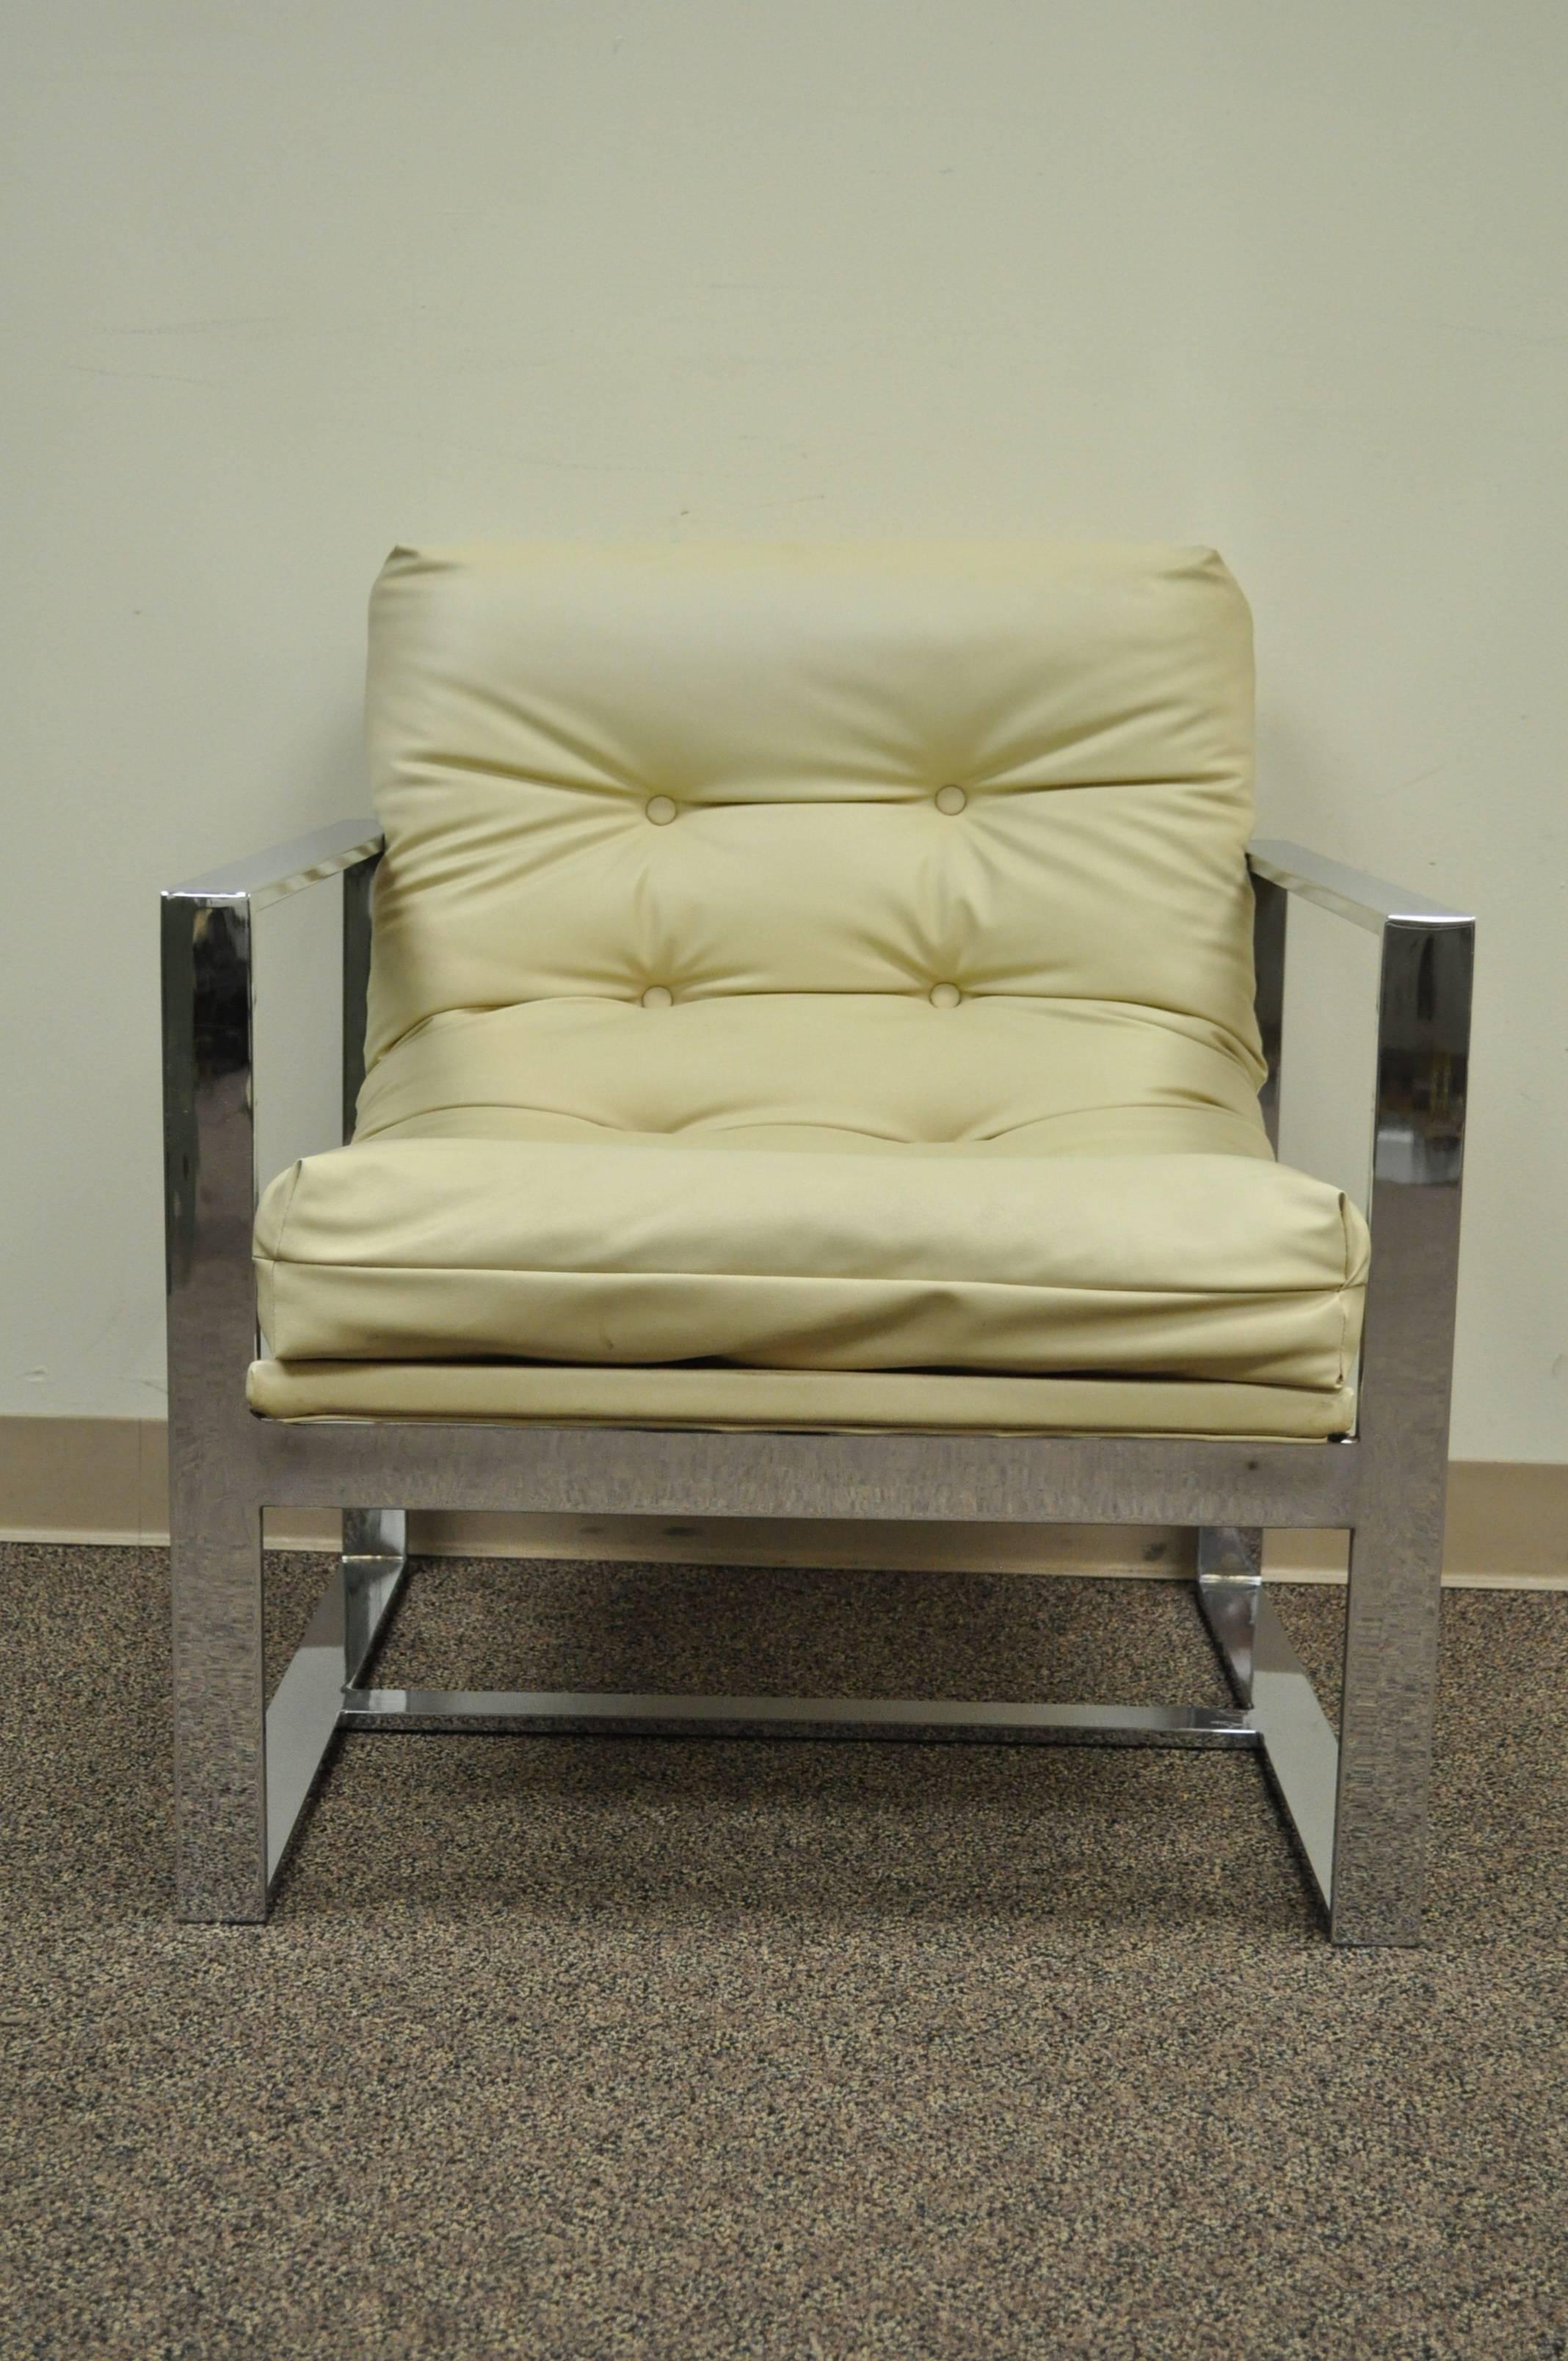 Très belle chaise longue chromée vintage dans le style de Milo Baughman pour Thayer. La chaise se caractérise par une stature large et impressionnante, et par une construction solide de barres plates chromées avec des joints sans soudure. La hauteur